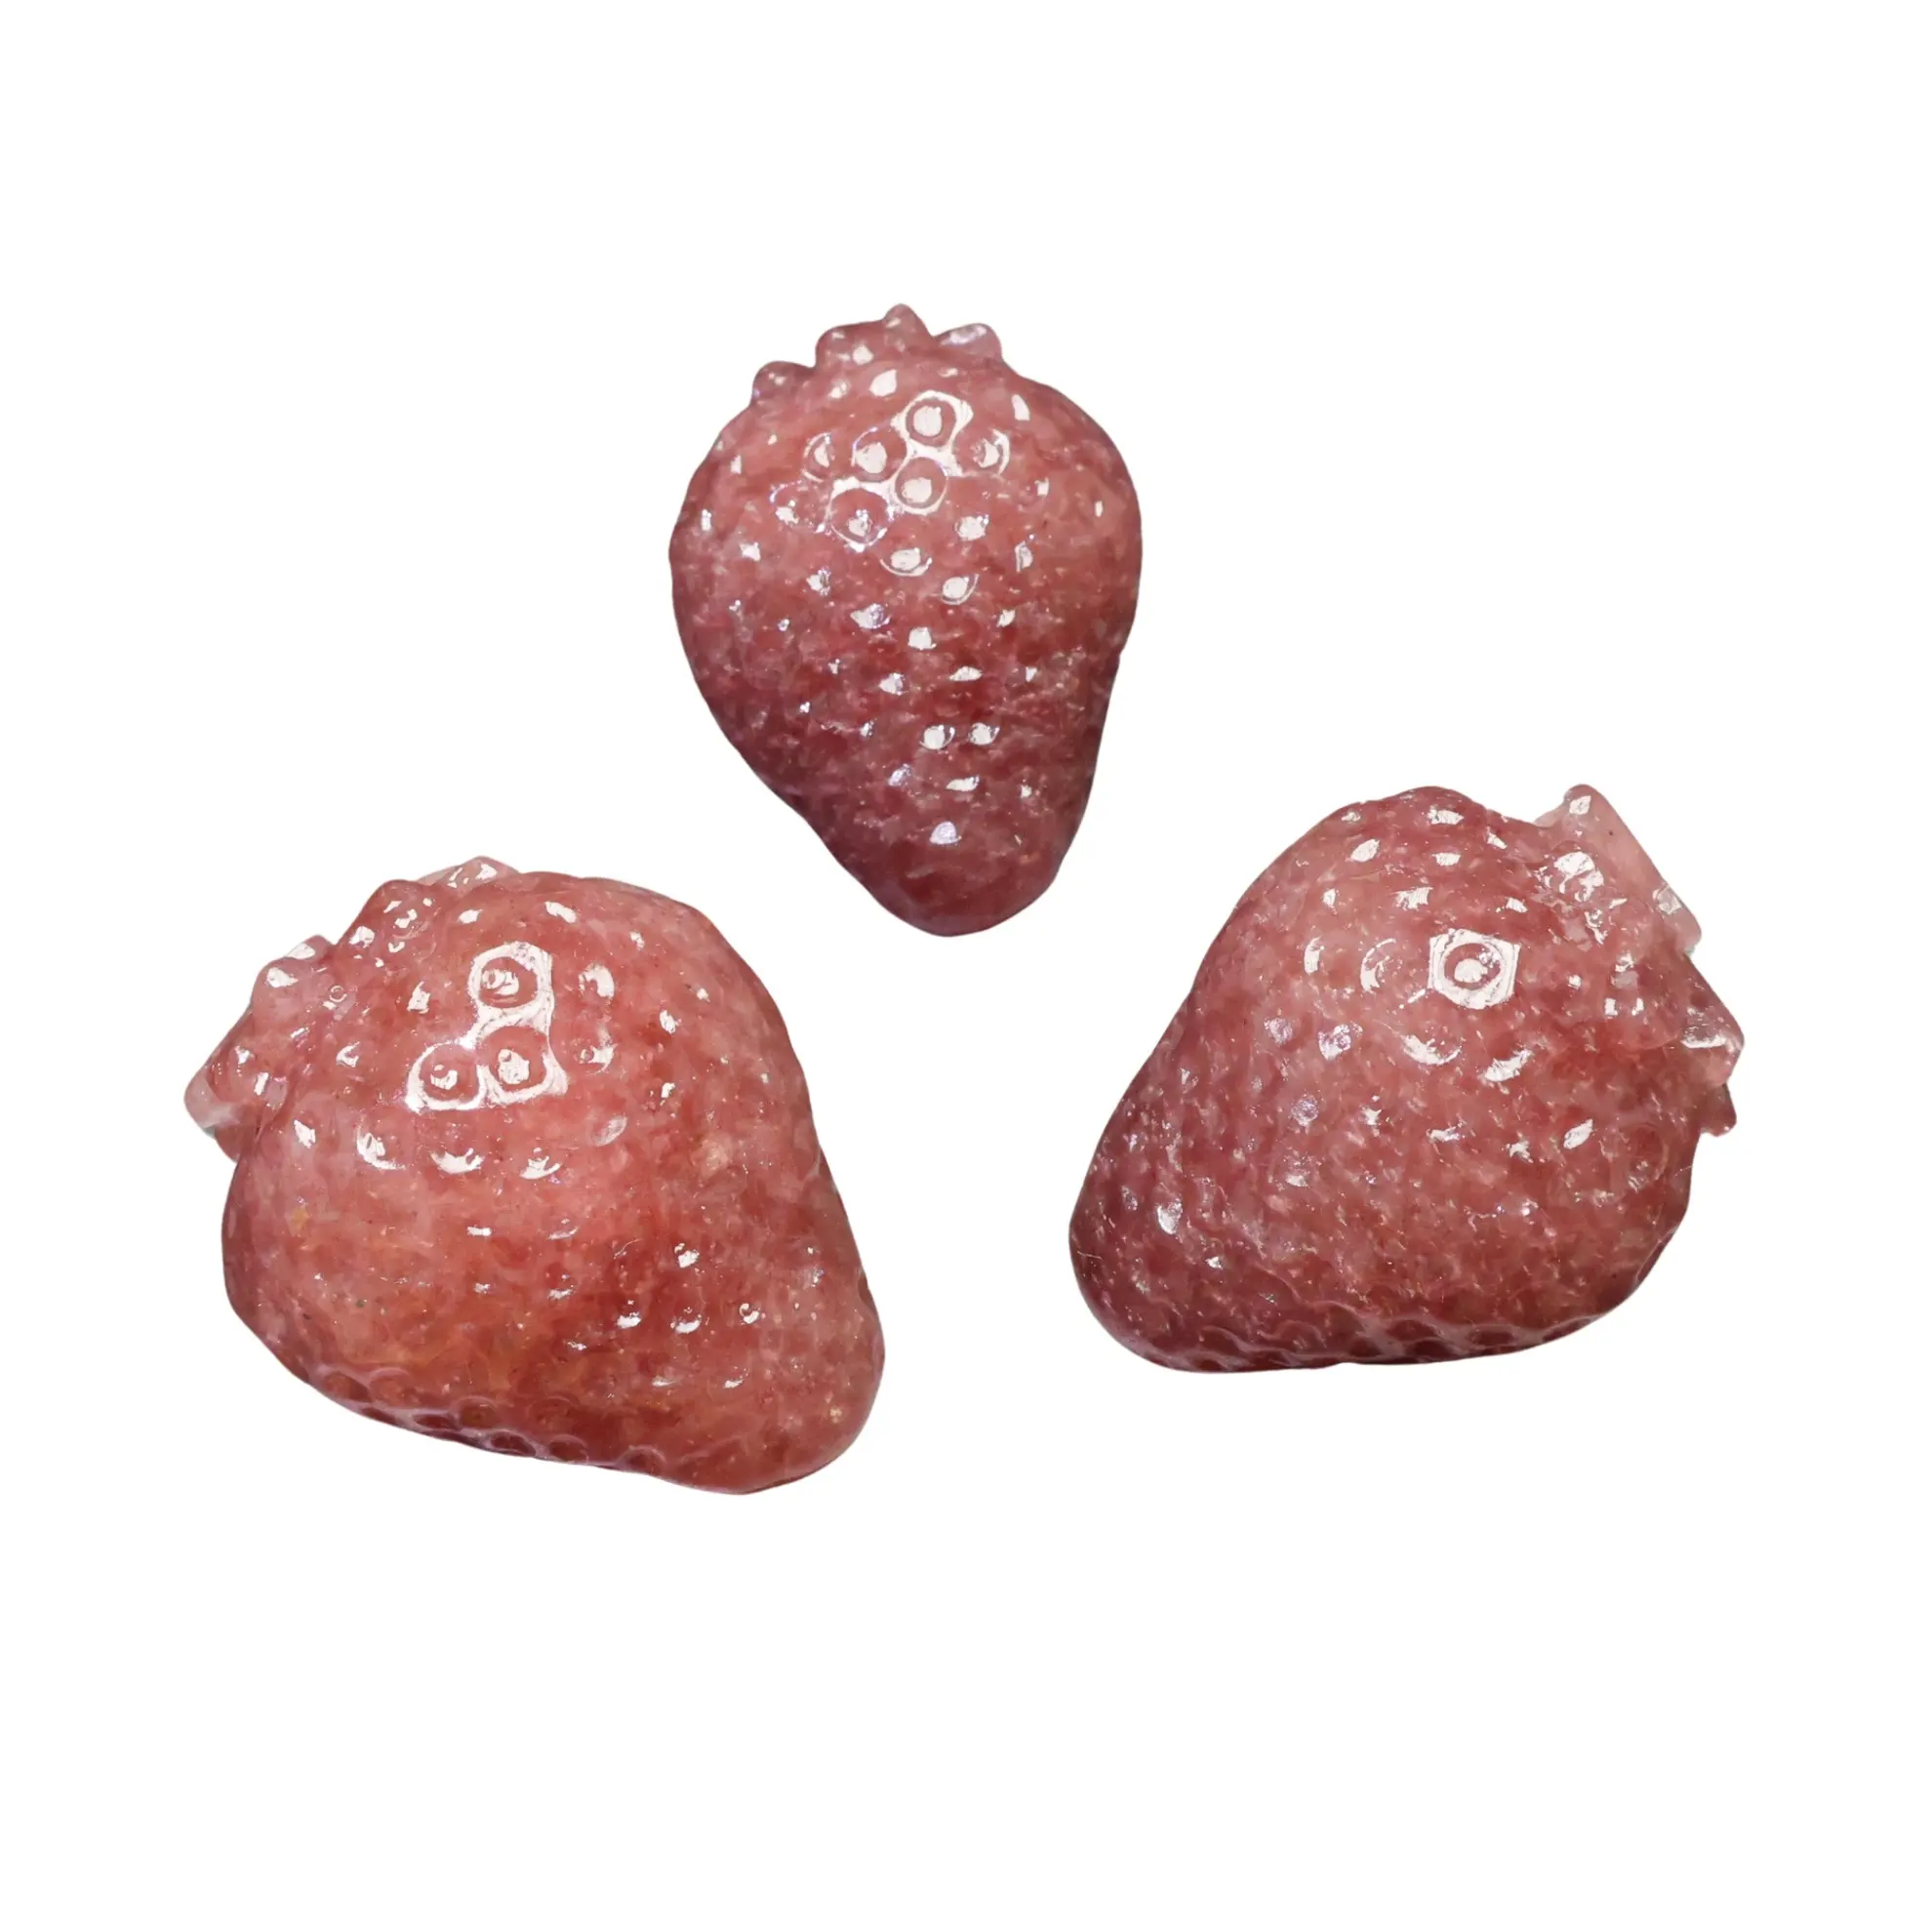 Kenny Crystals Großhandel natürliche Kristalls chnitzerei Erdbeer quarz Erdbeer frucht Schnitzen für Wohnkultur und Geschenke